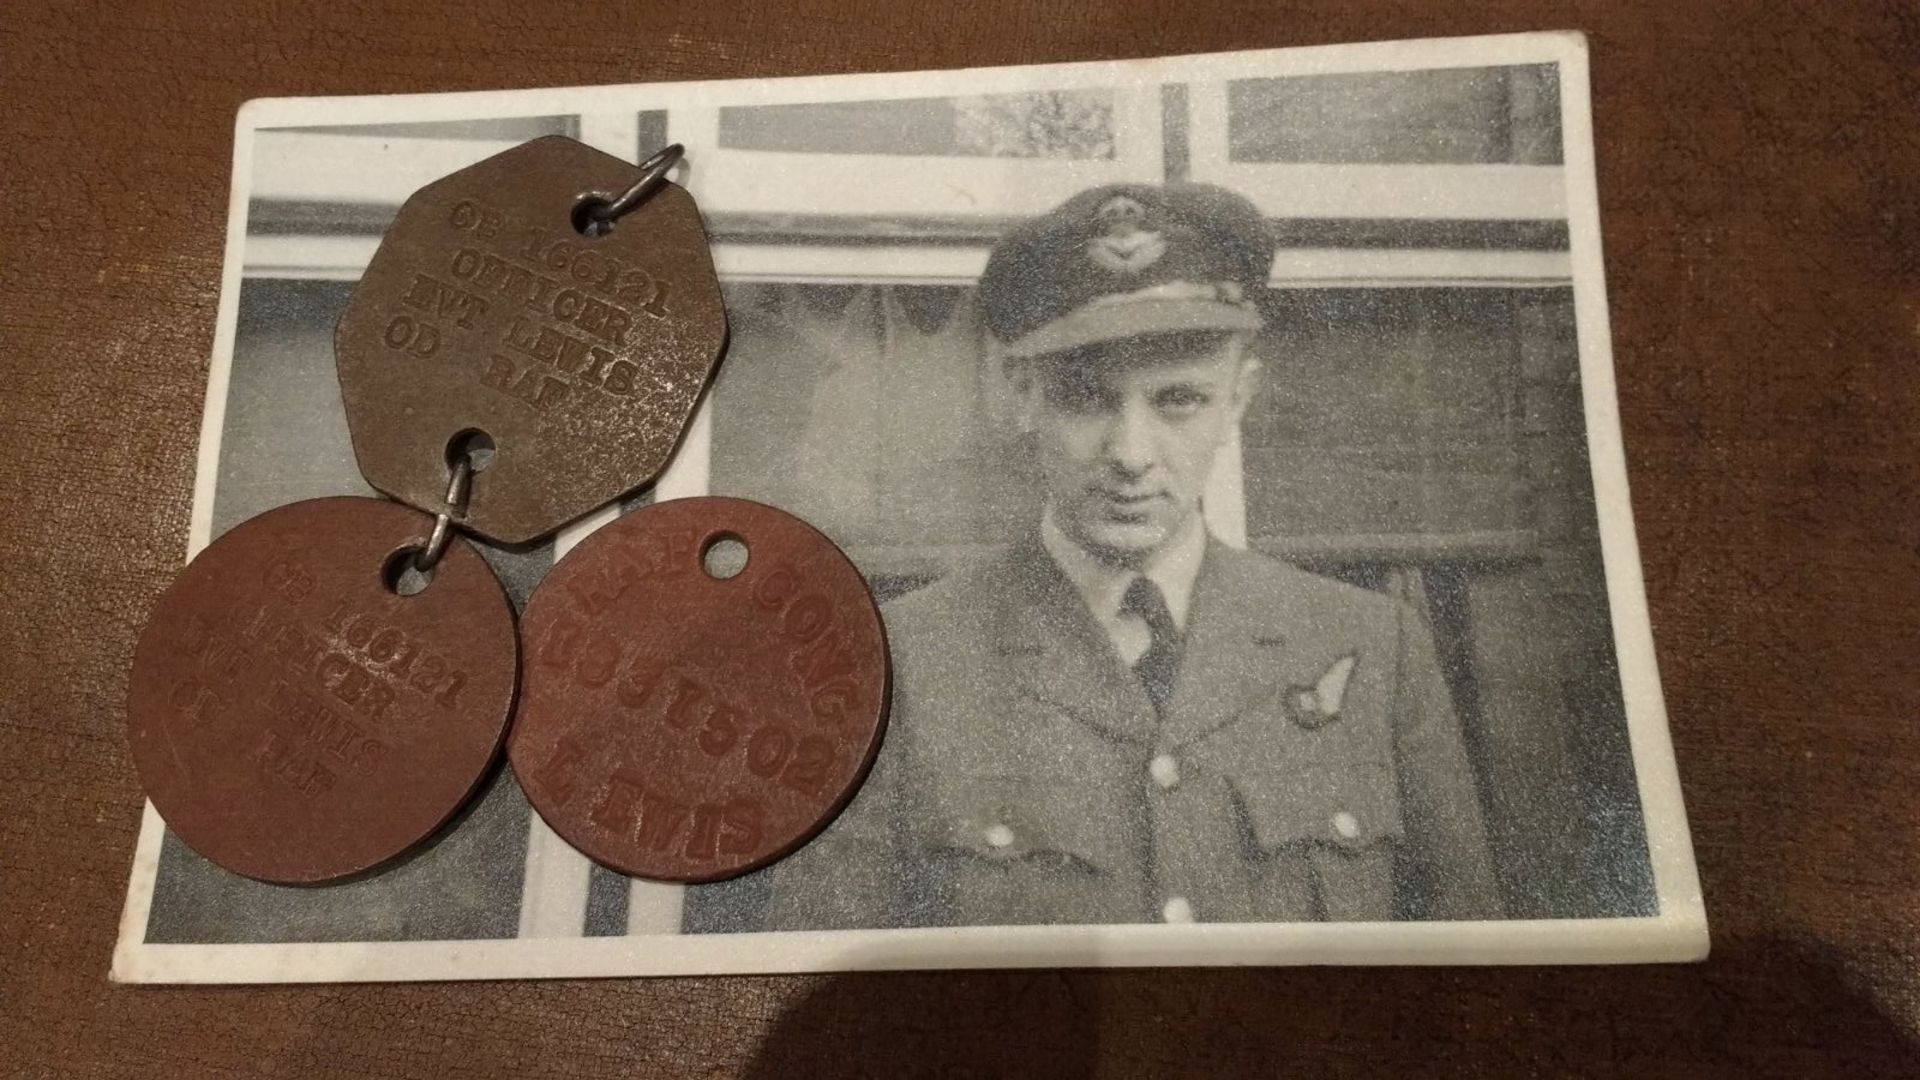 WW2 Spitfire Pilot's Gun Camera And Memorabilia (Multiple Images 1 of 31) - Bild 30 aus 31